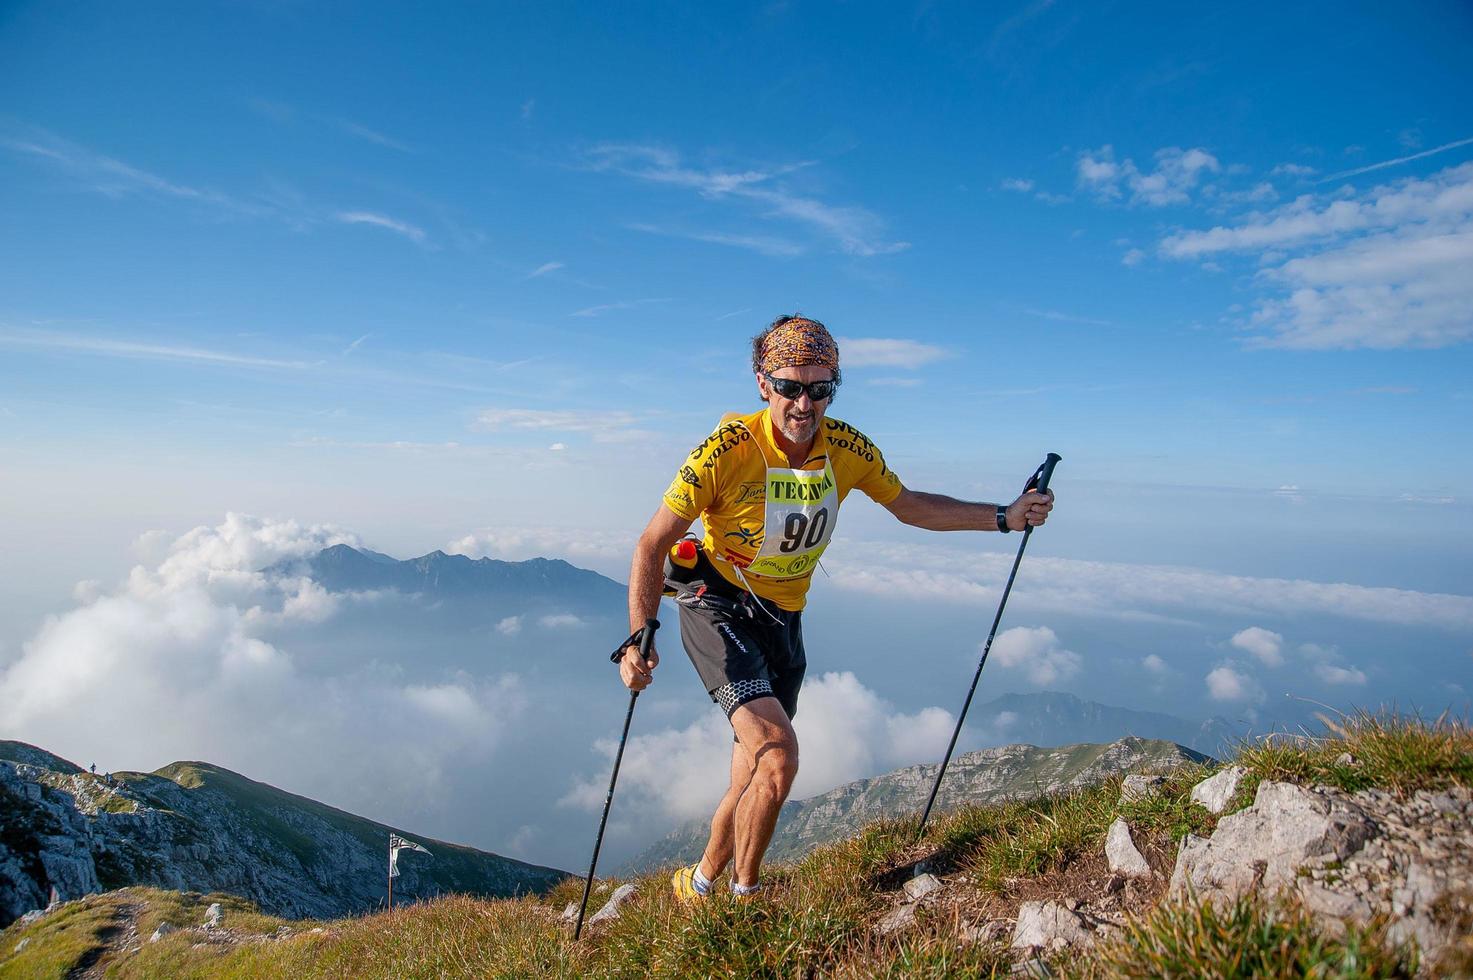 zorzone italien 2015 bergrennen von 38 km foto